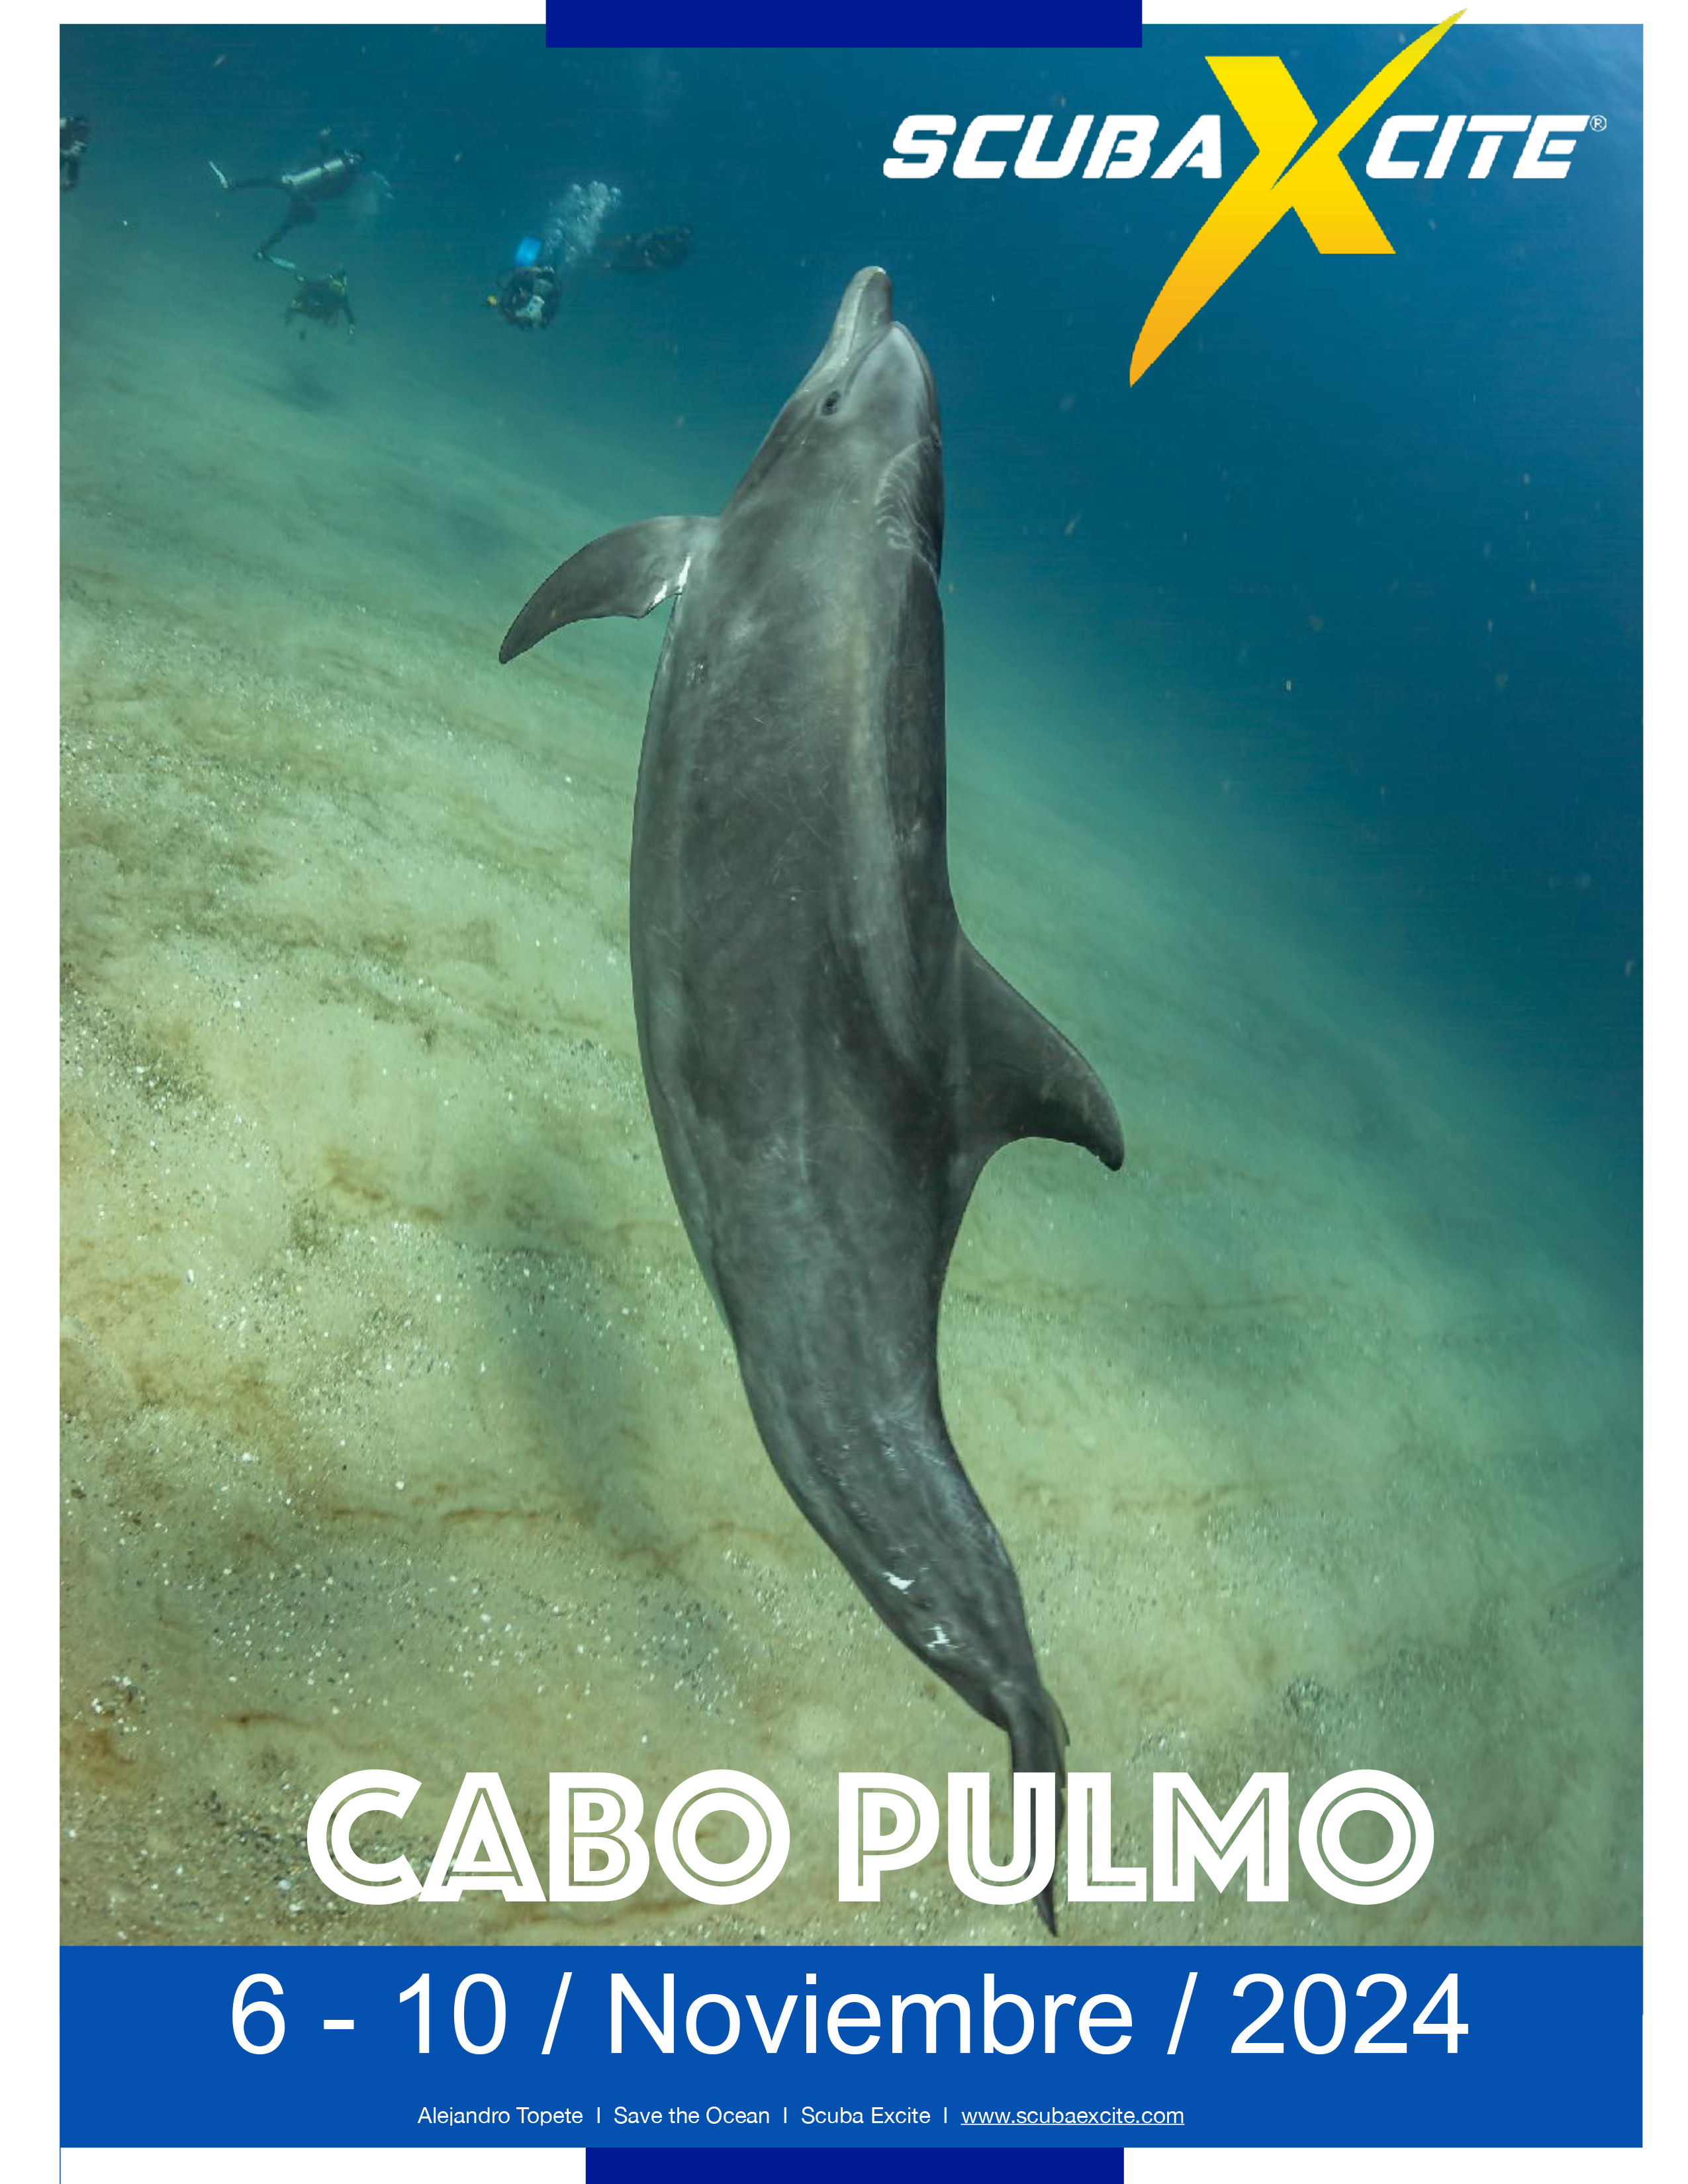 Buceo en Cabo Pulmo, Buceo en Mar de Cortes, Bucea en reserva natural,